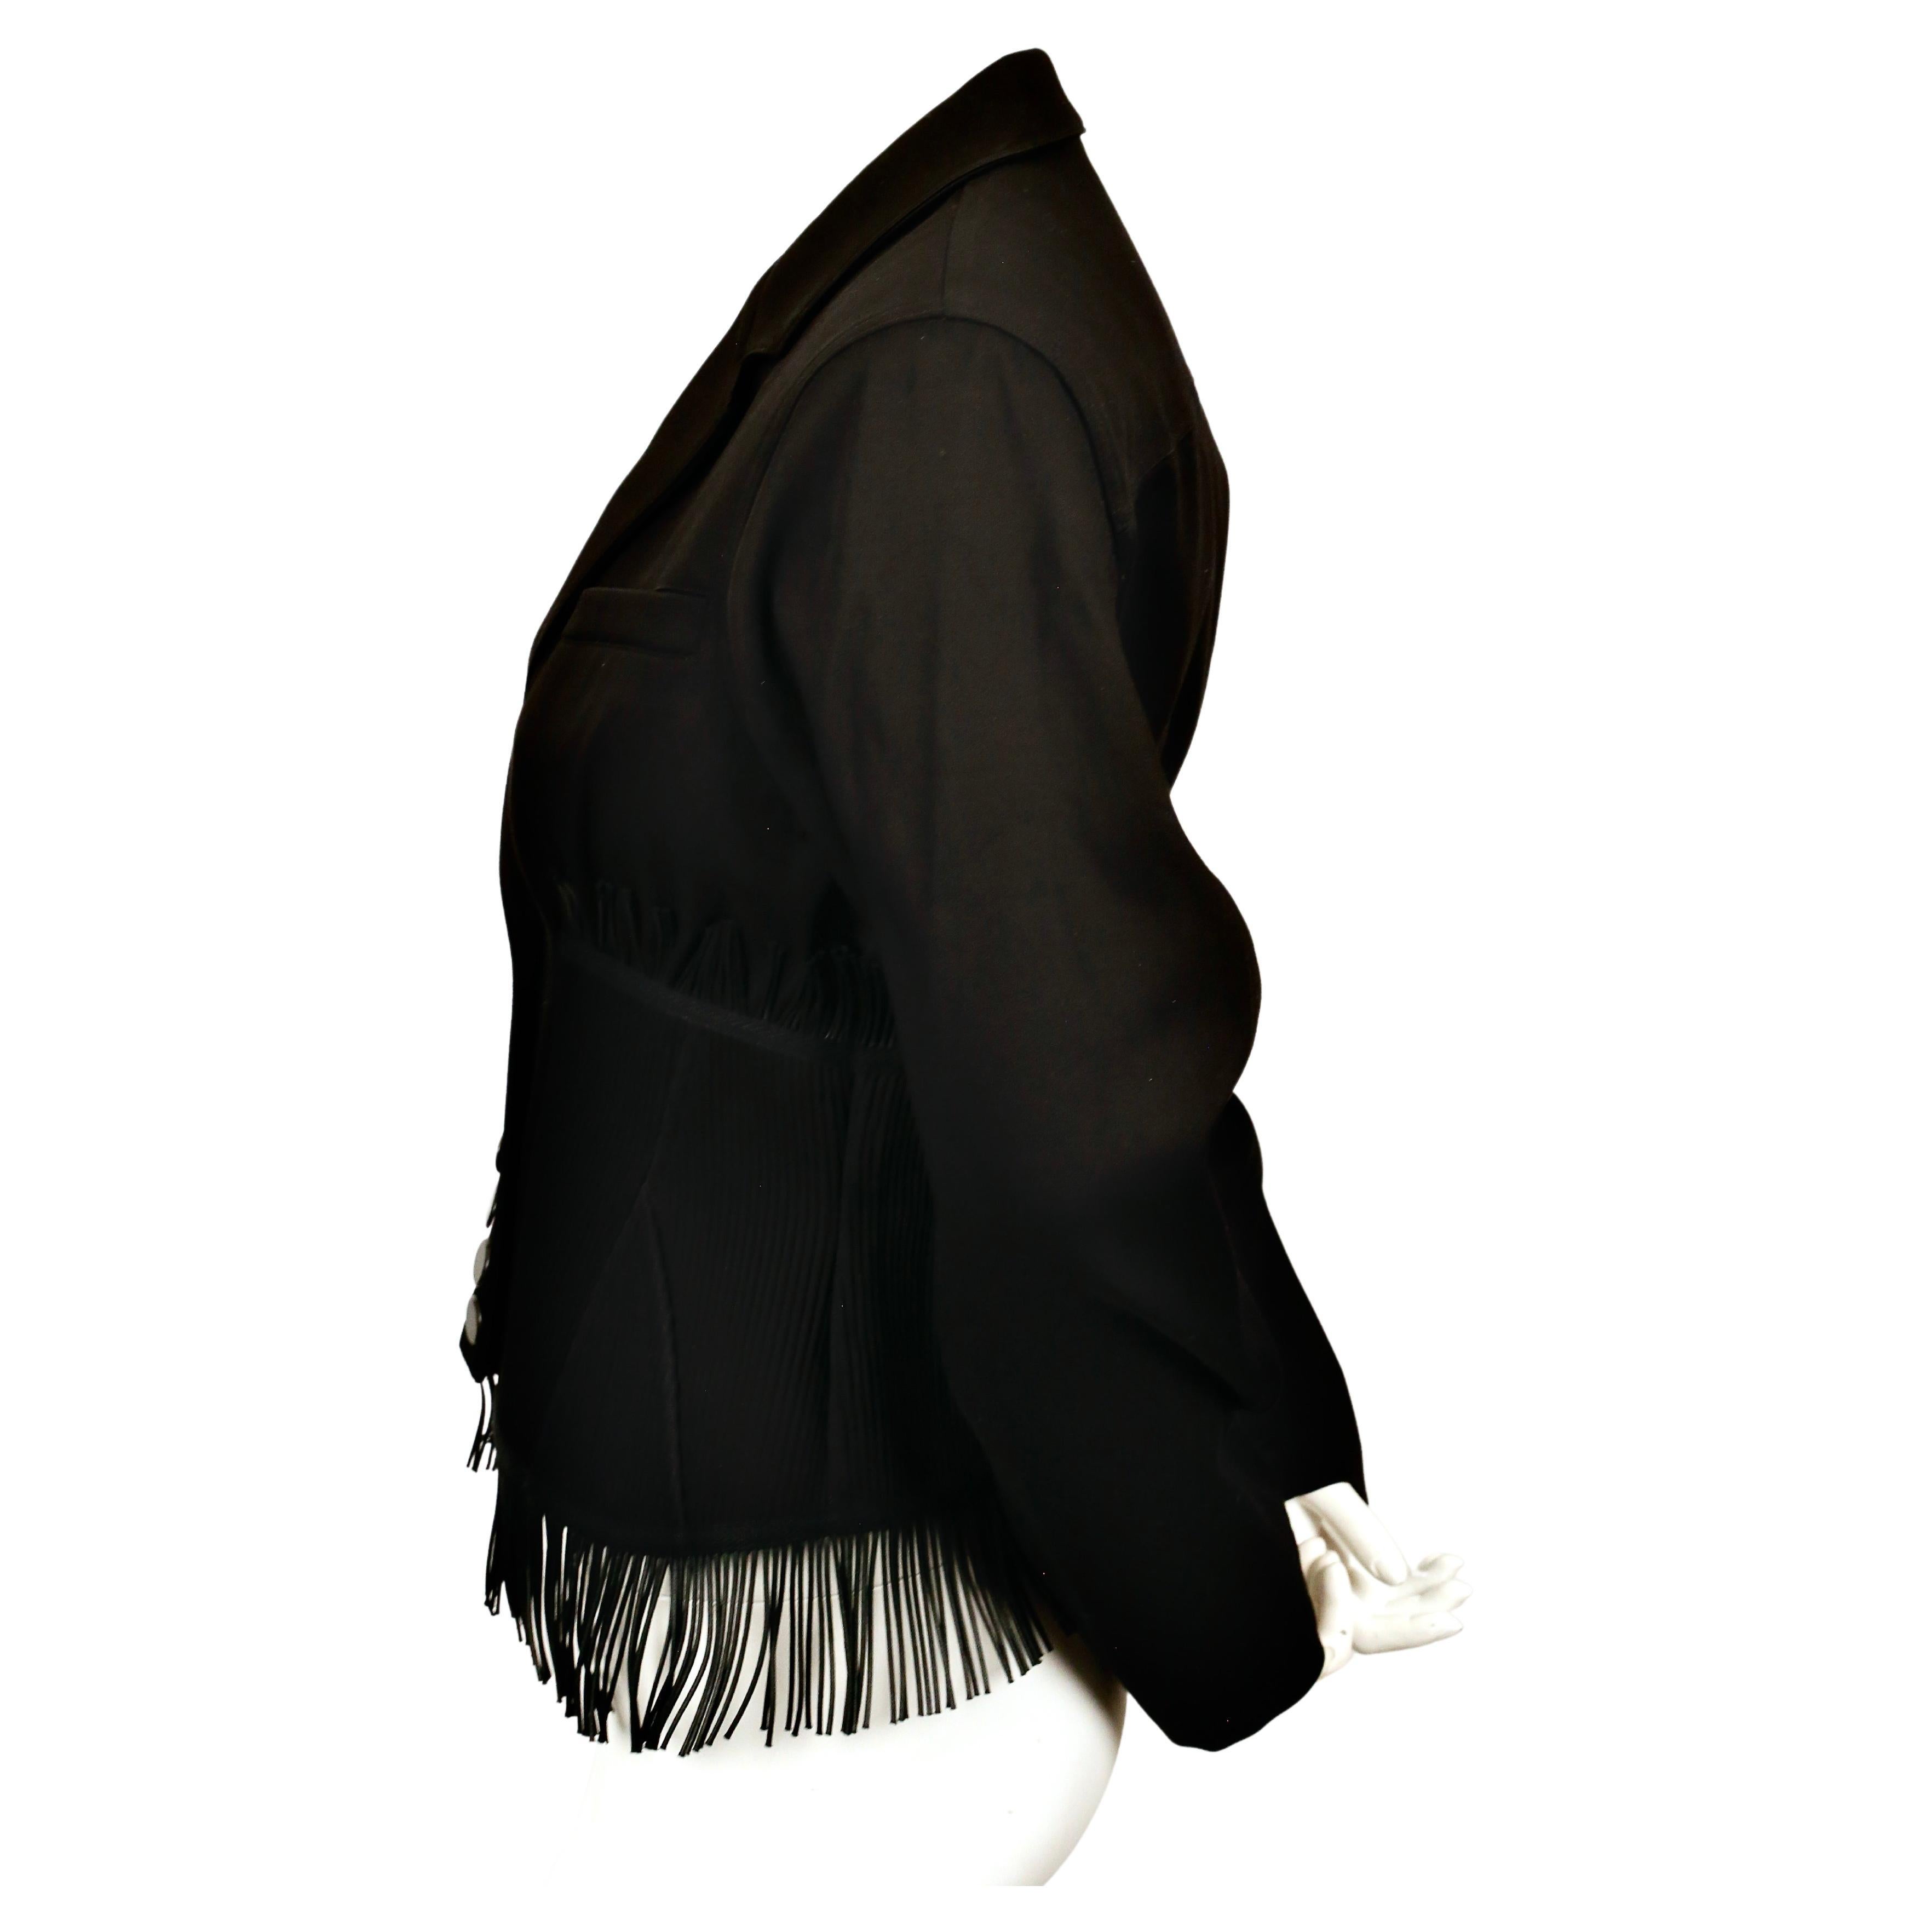 Veste corset en gabardine de coton noir de jais avec empiècements surpiqués, armatures et franges, signée Azzedine Alaia. Cette veste est une réédition de la veste du printemps 1998. Taille française 38 (taille fine). Mesures approximatives : épaule